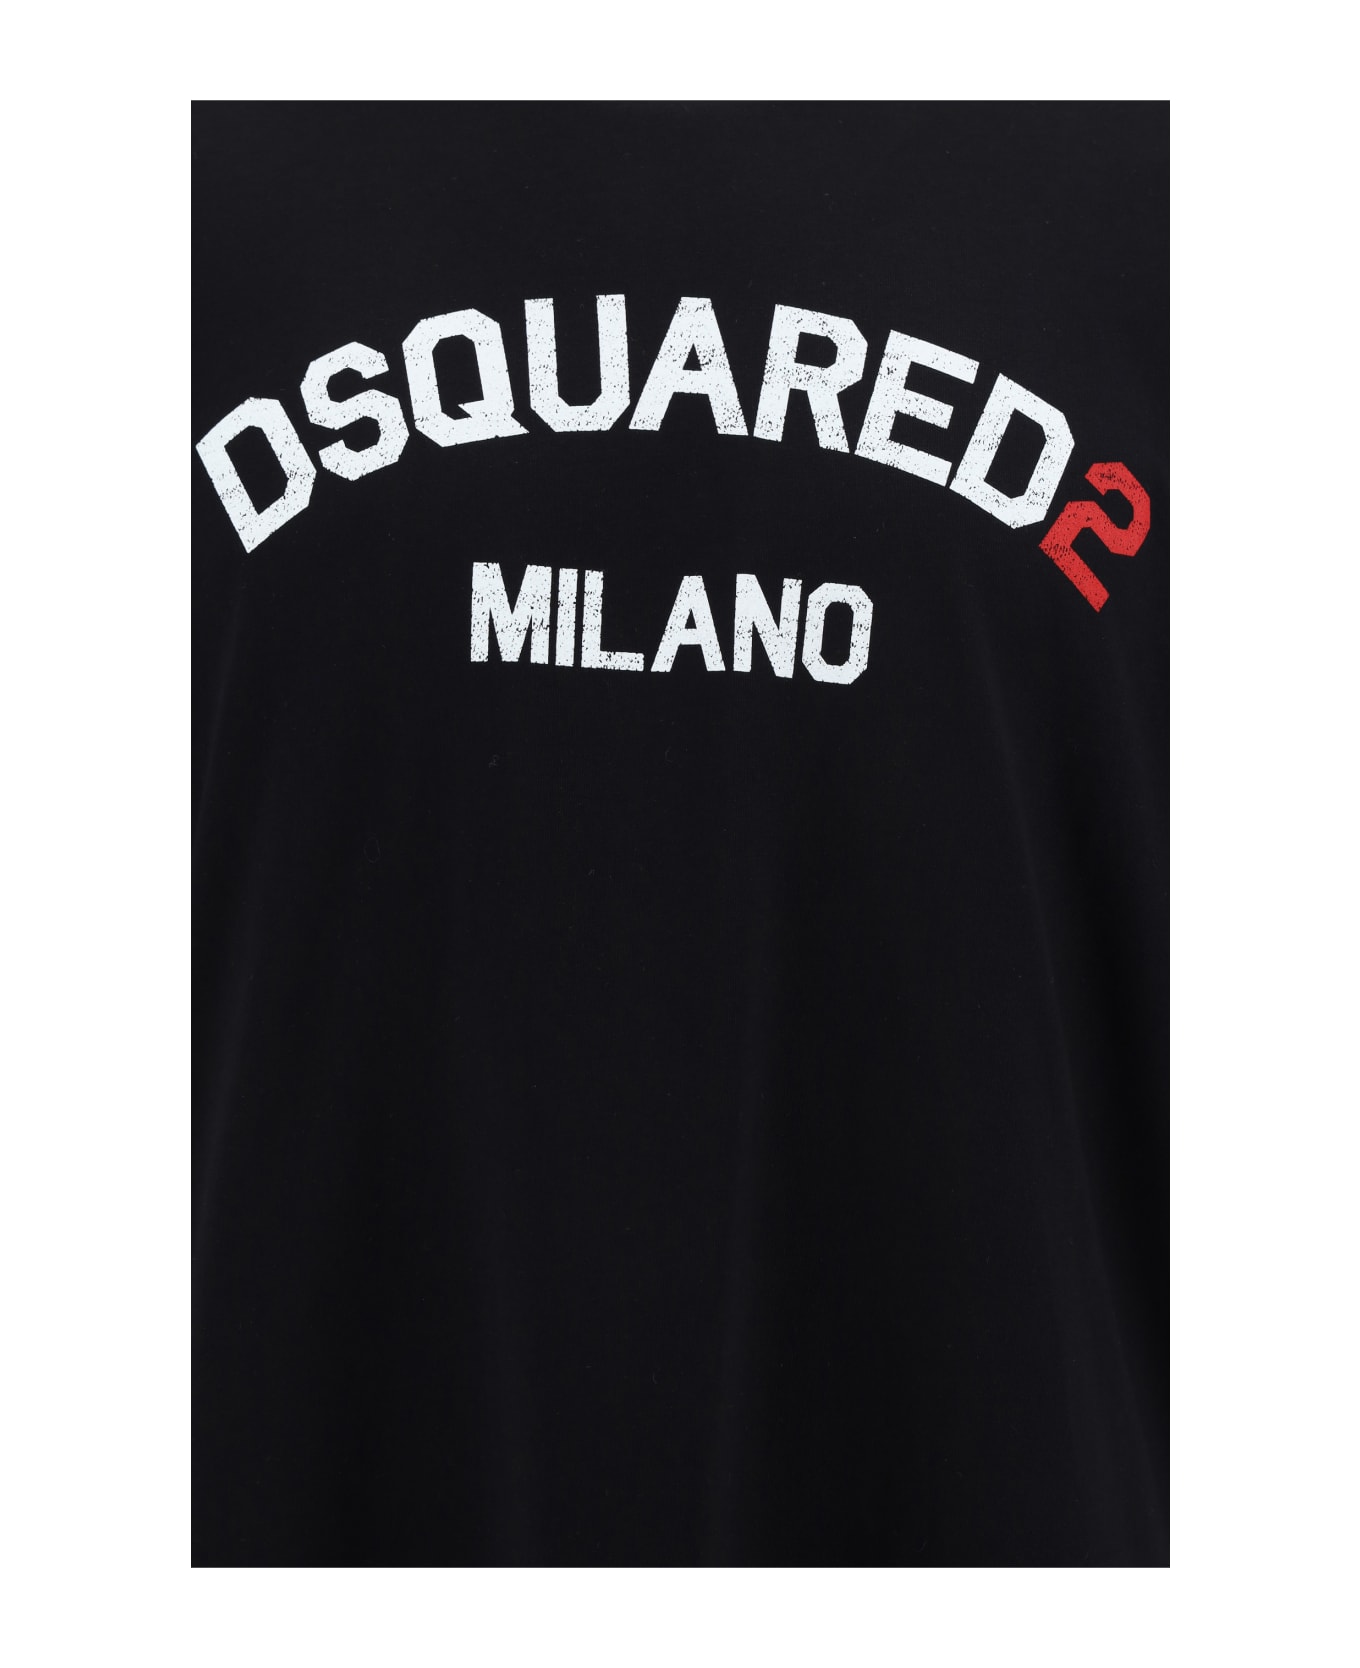 Dsquared2 T-shirt - Black